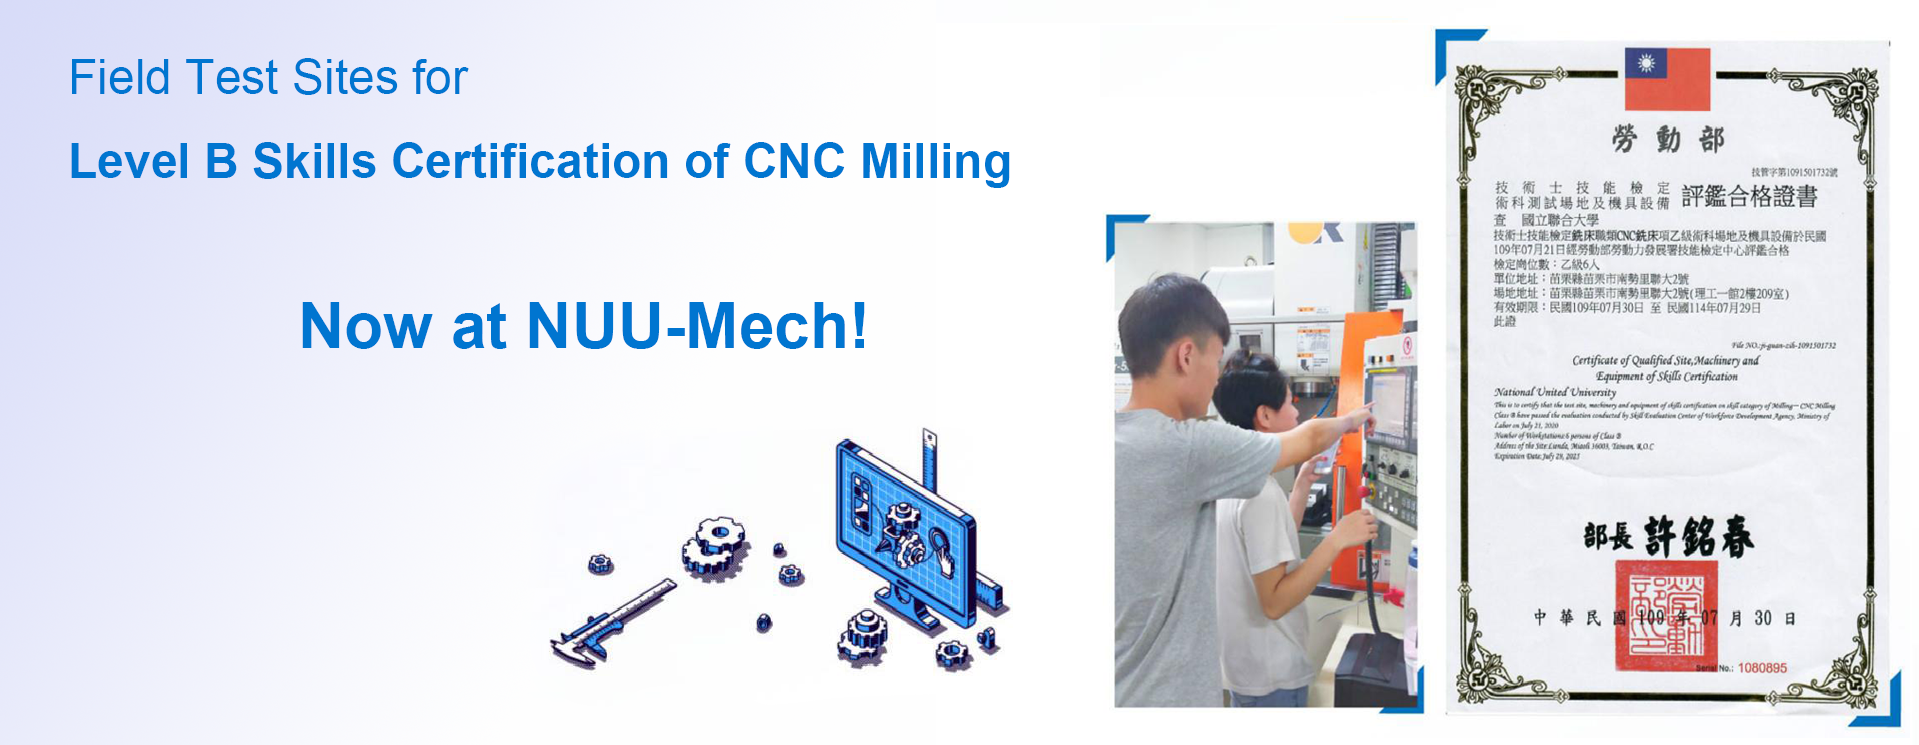 機械工程學系完成建置CNC銑床乙級術科檢定場地